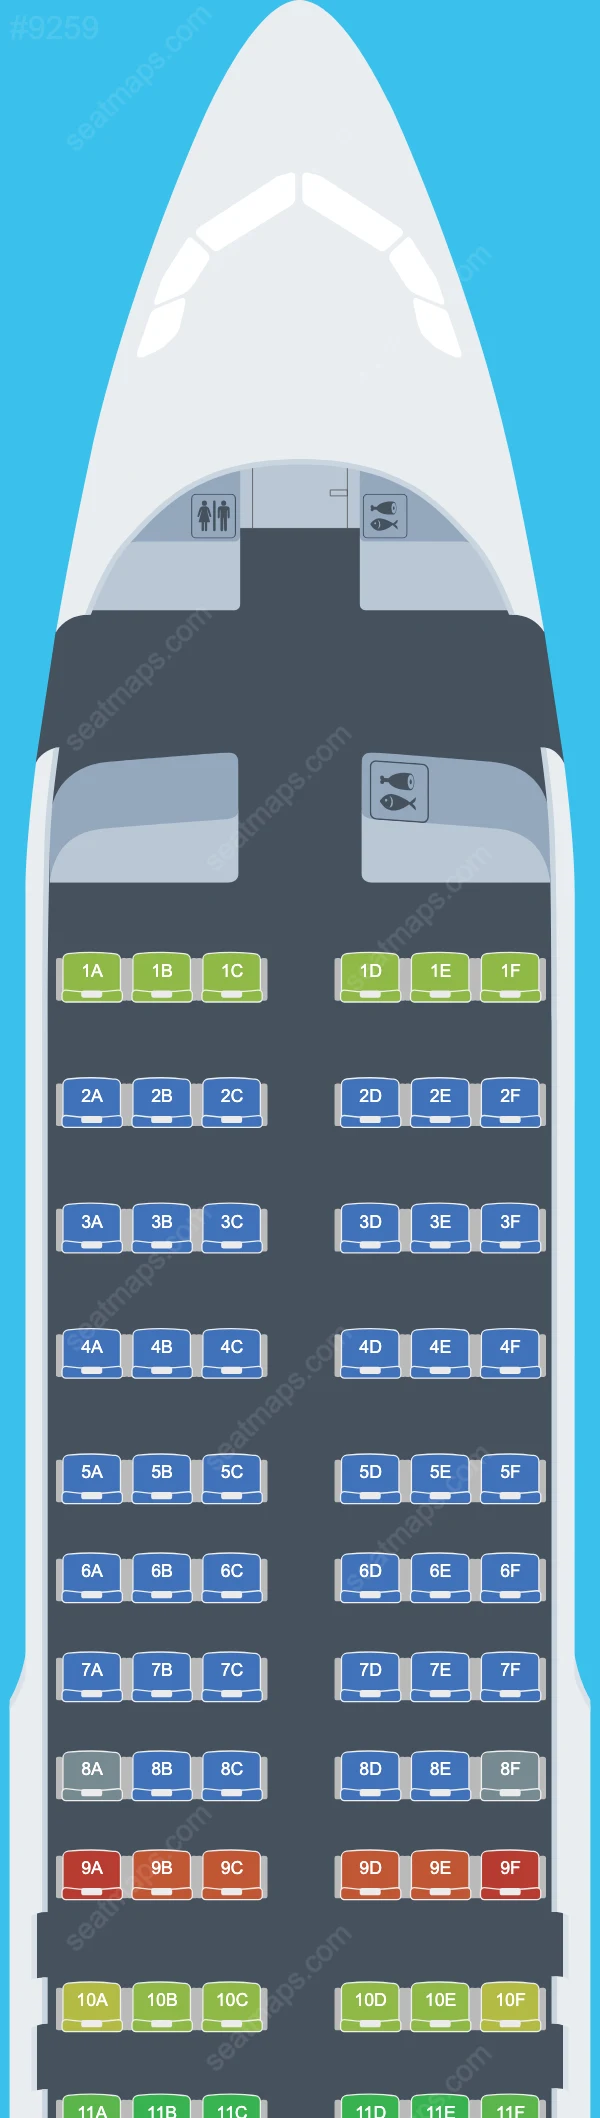 Air Albania Airbus A320 Seat Maps A320-200